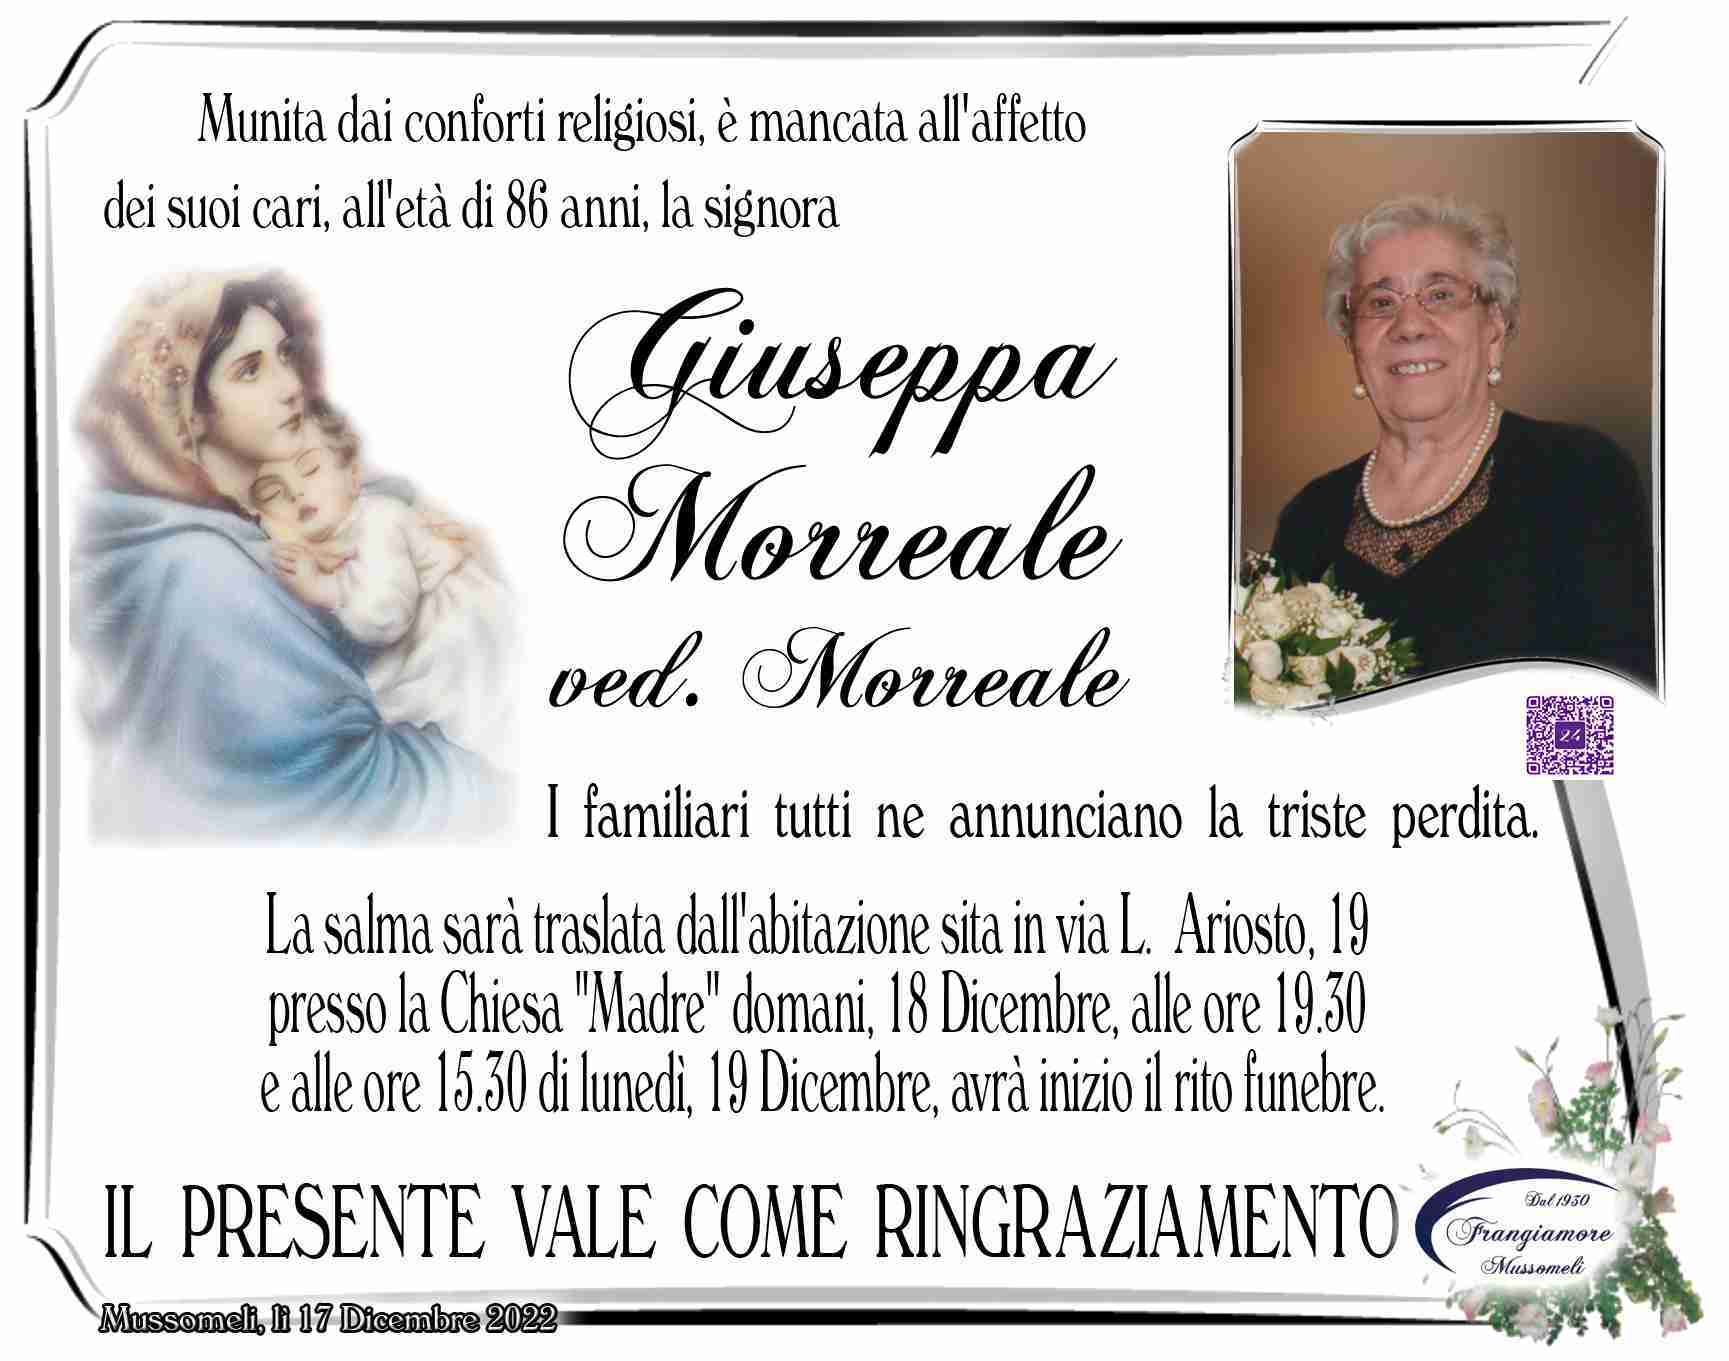 Giuseppa Morreale